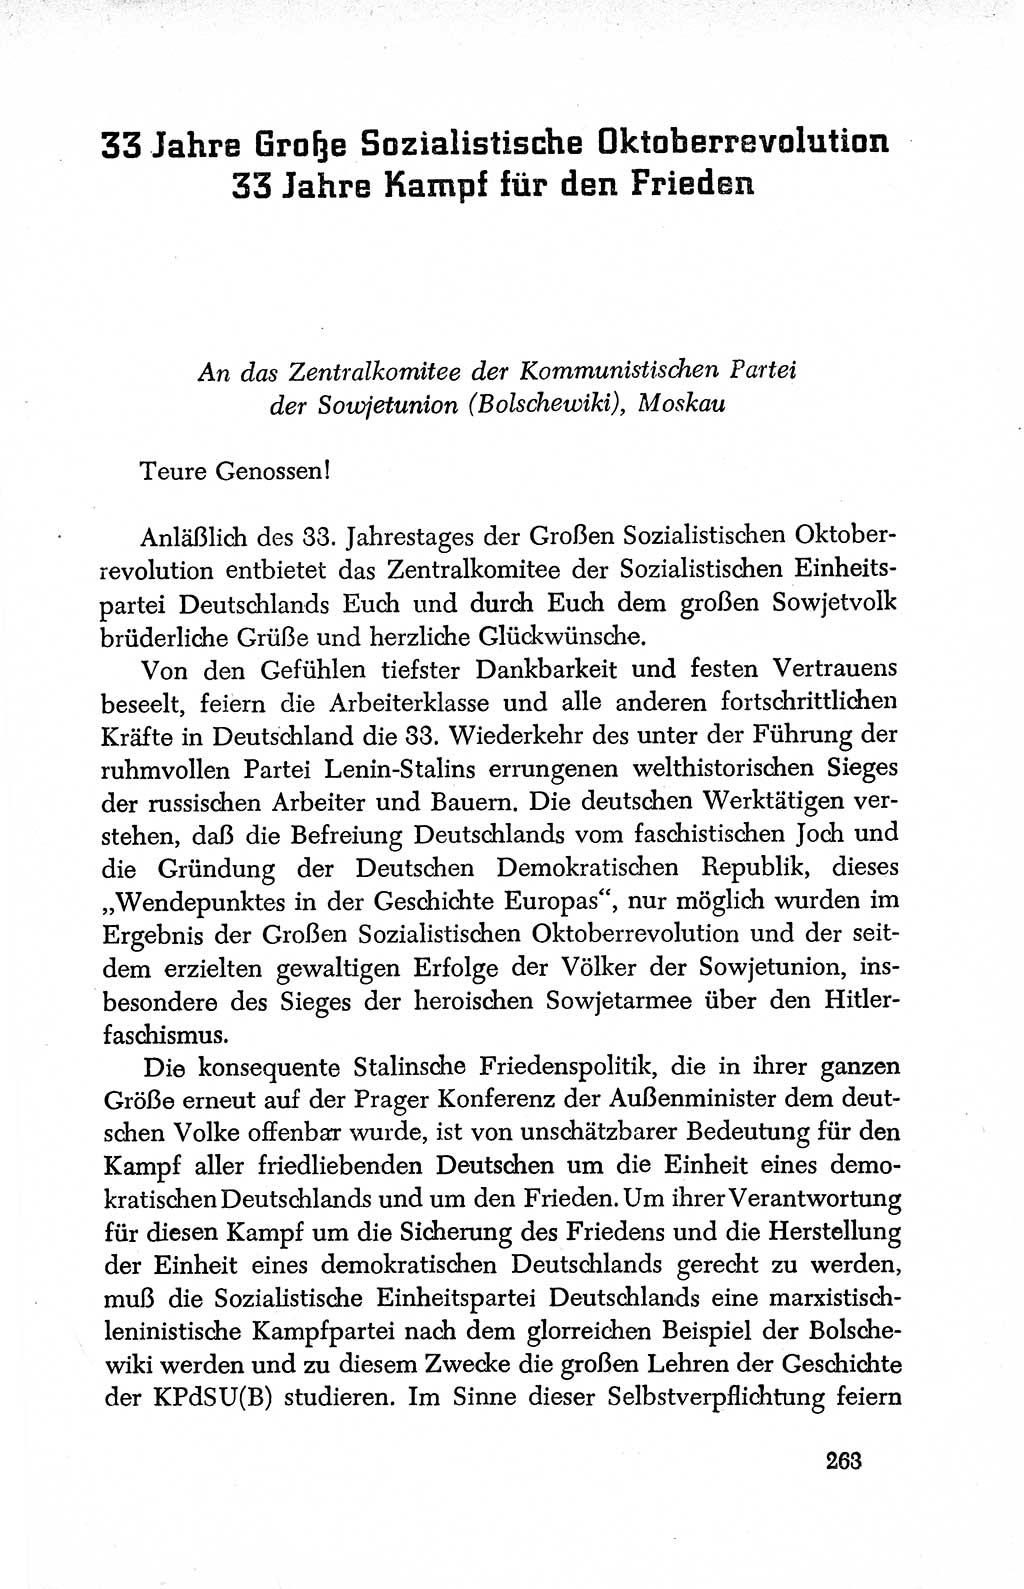 Dokumente der Sozialistischen Einheitspartei Deutschlands (SED) [Deutsche Demokratische Republik (DDR)] 1950-1952, Seite 263 (Dok. SED DDR 1950-1952, S. 263)